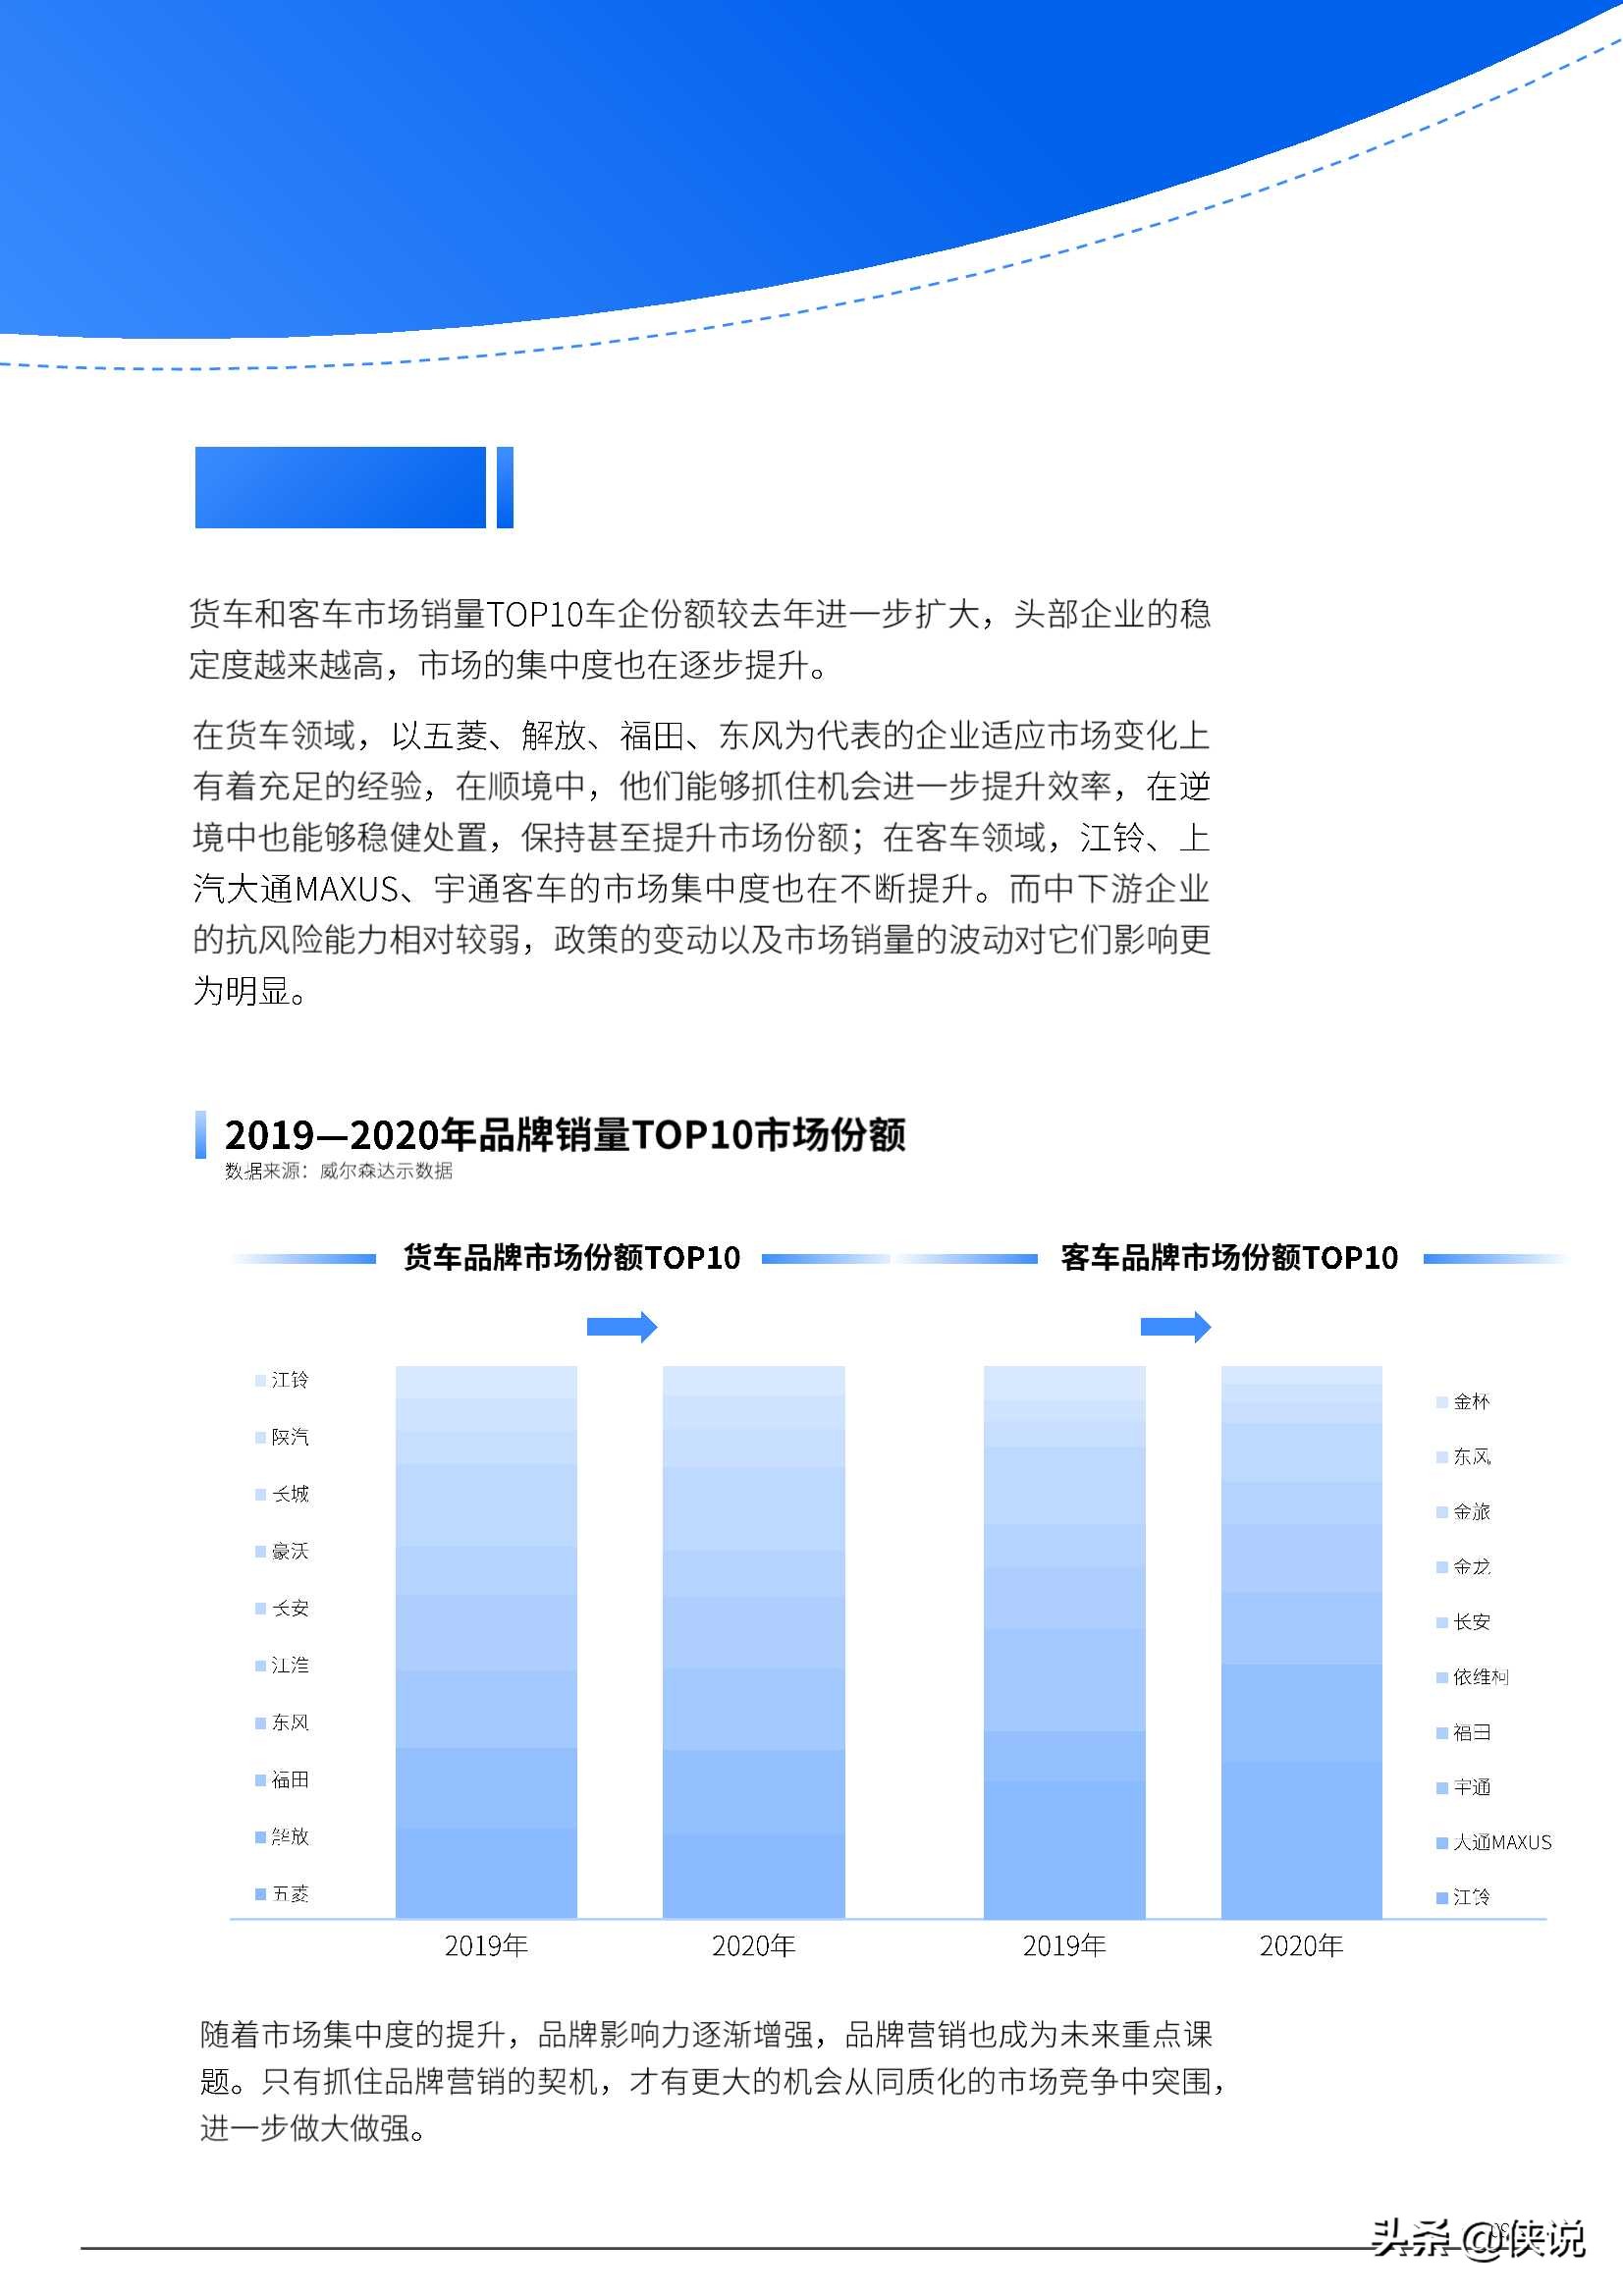 2021年中国商用车市场研究报告